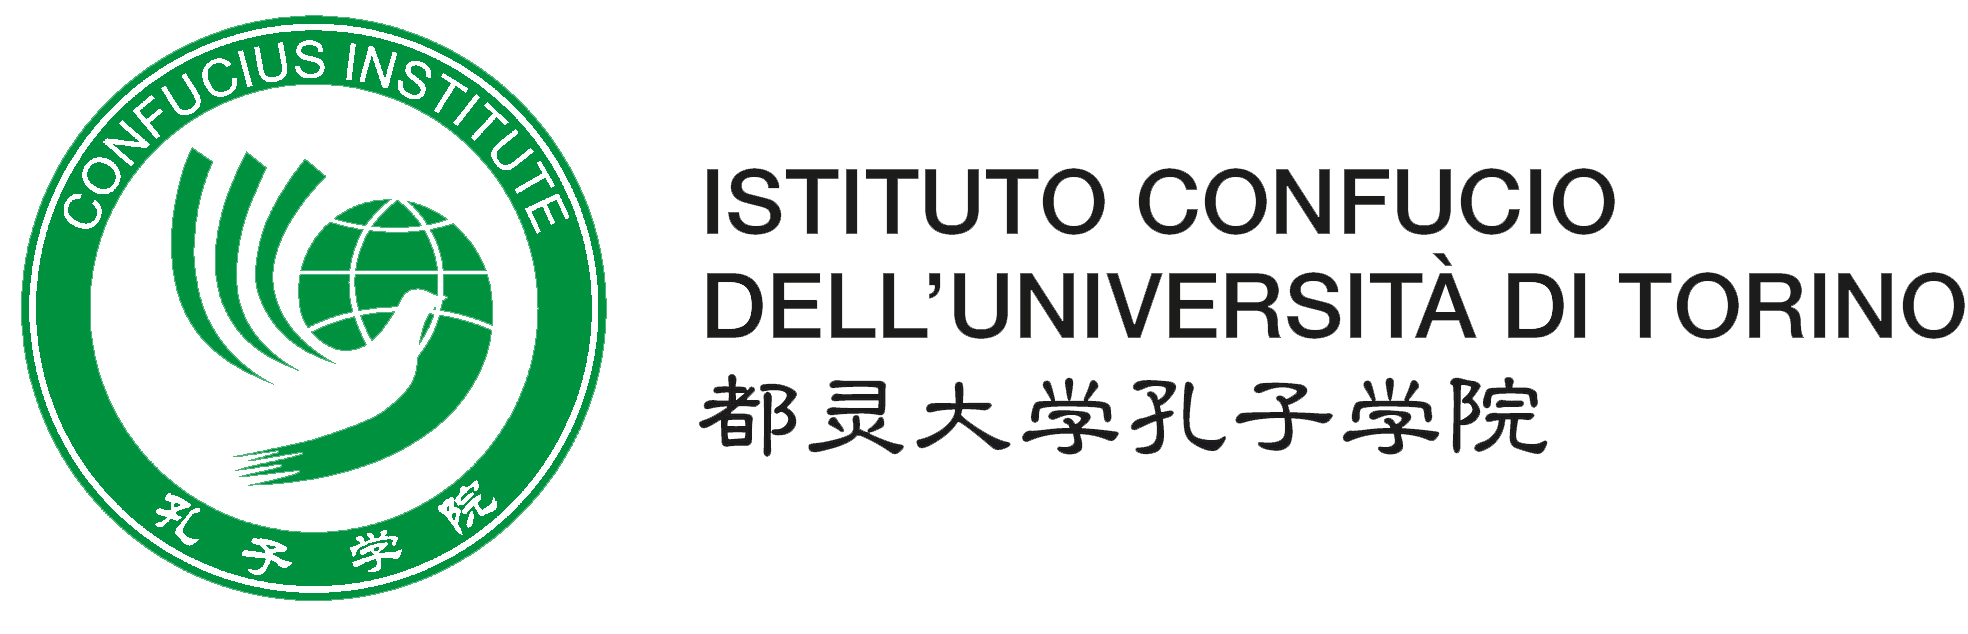 Istituto Confucio dell'Università di Torino